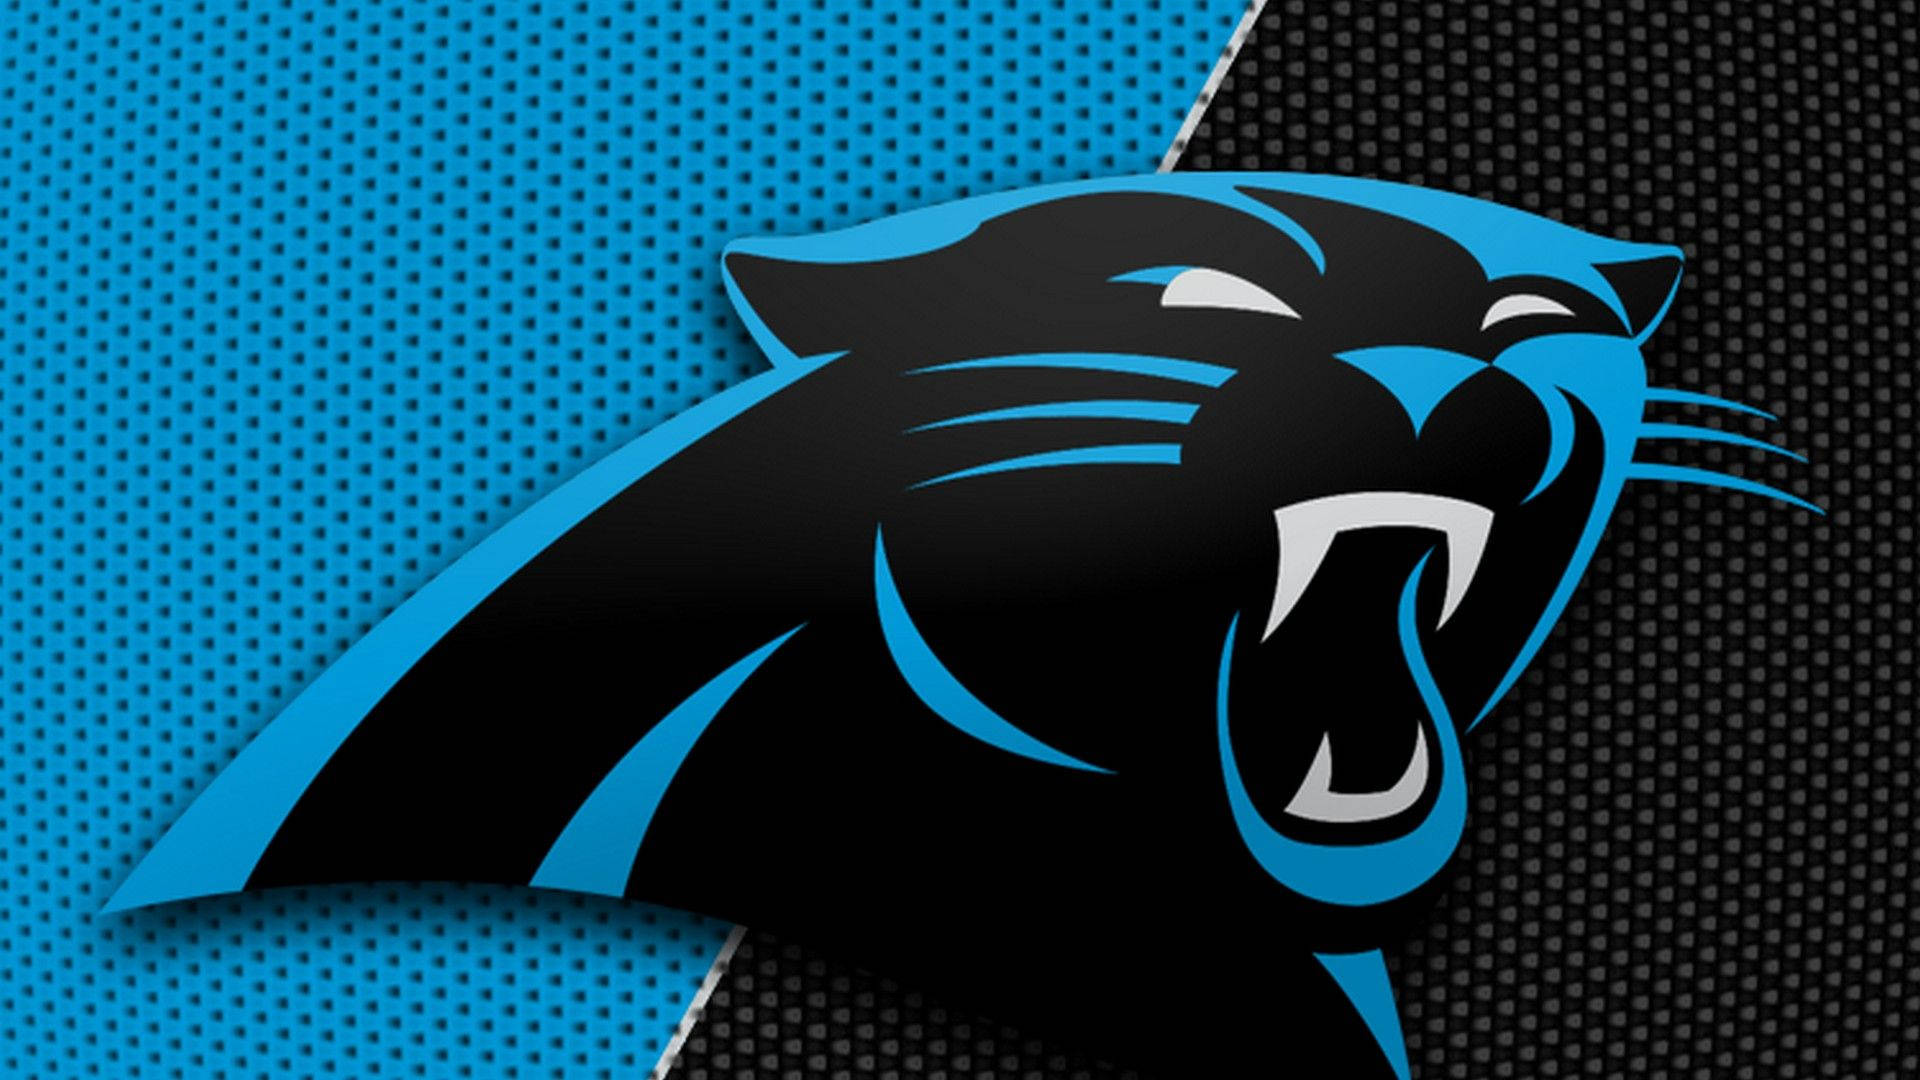 Fondods De Carolina Panthers